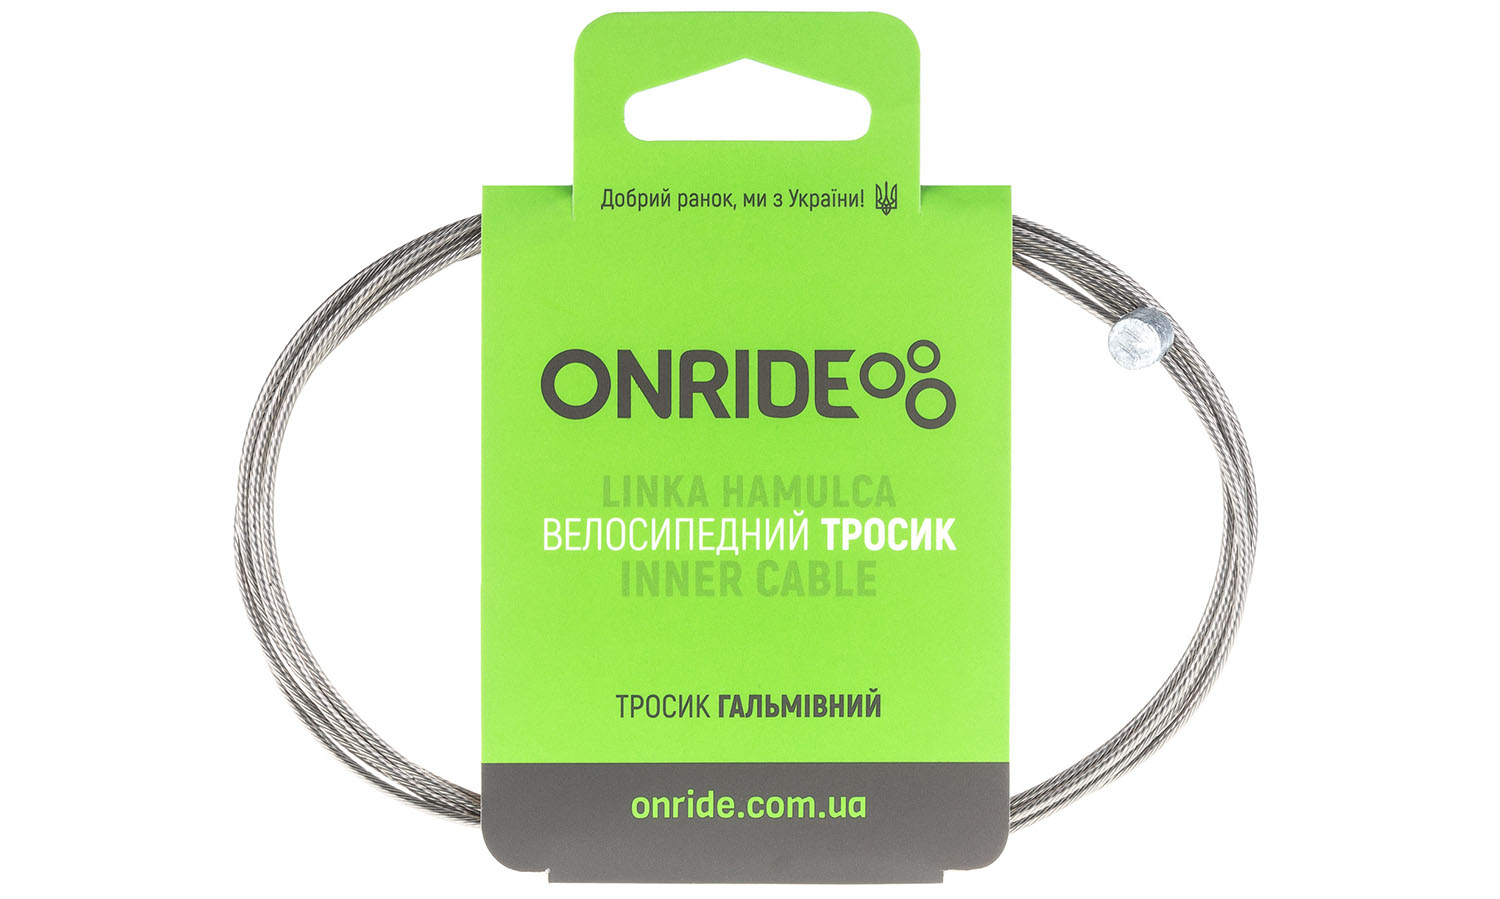 Фотография Тросик тормозной ONRIDE MTB, нержавейка, полированный, 1,7 м, индивидуальная упаковка блистер